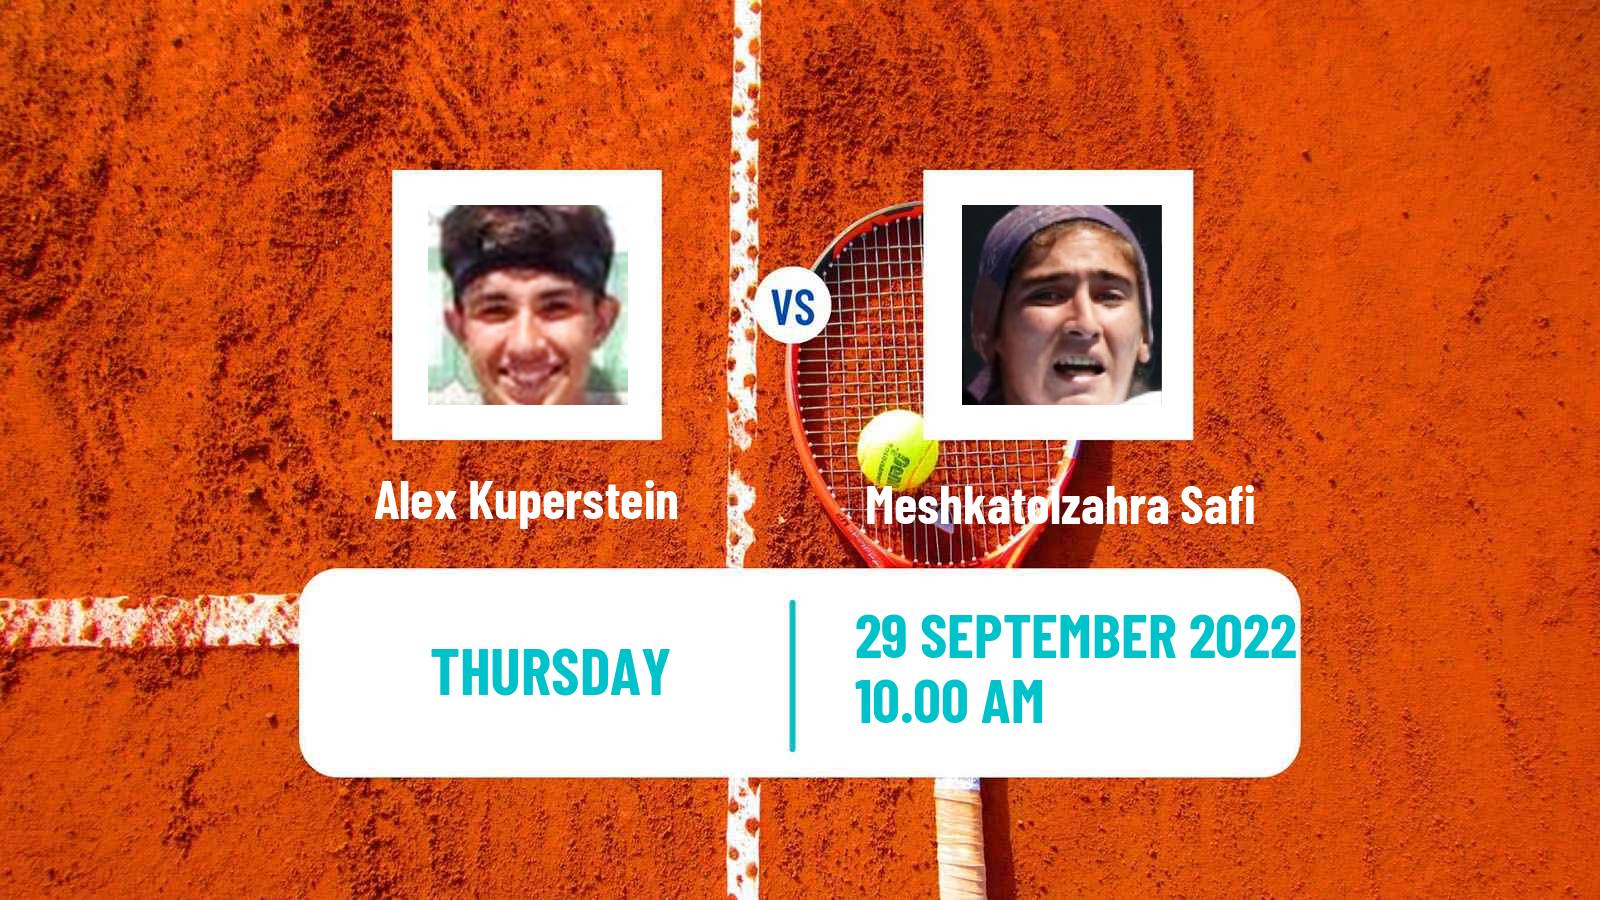 Tennis ITF Tournaments Alex Kuperstein - Meshkatolzahra Safi